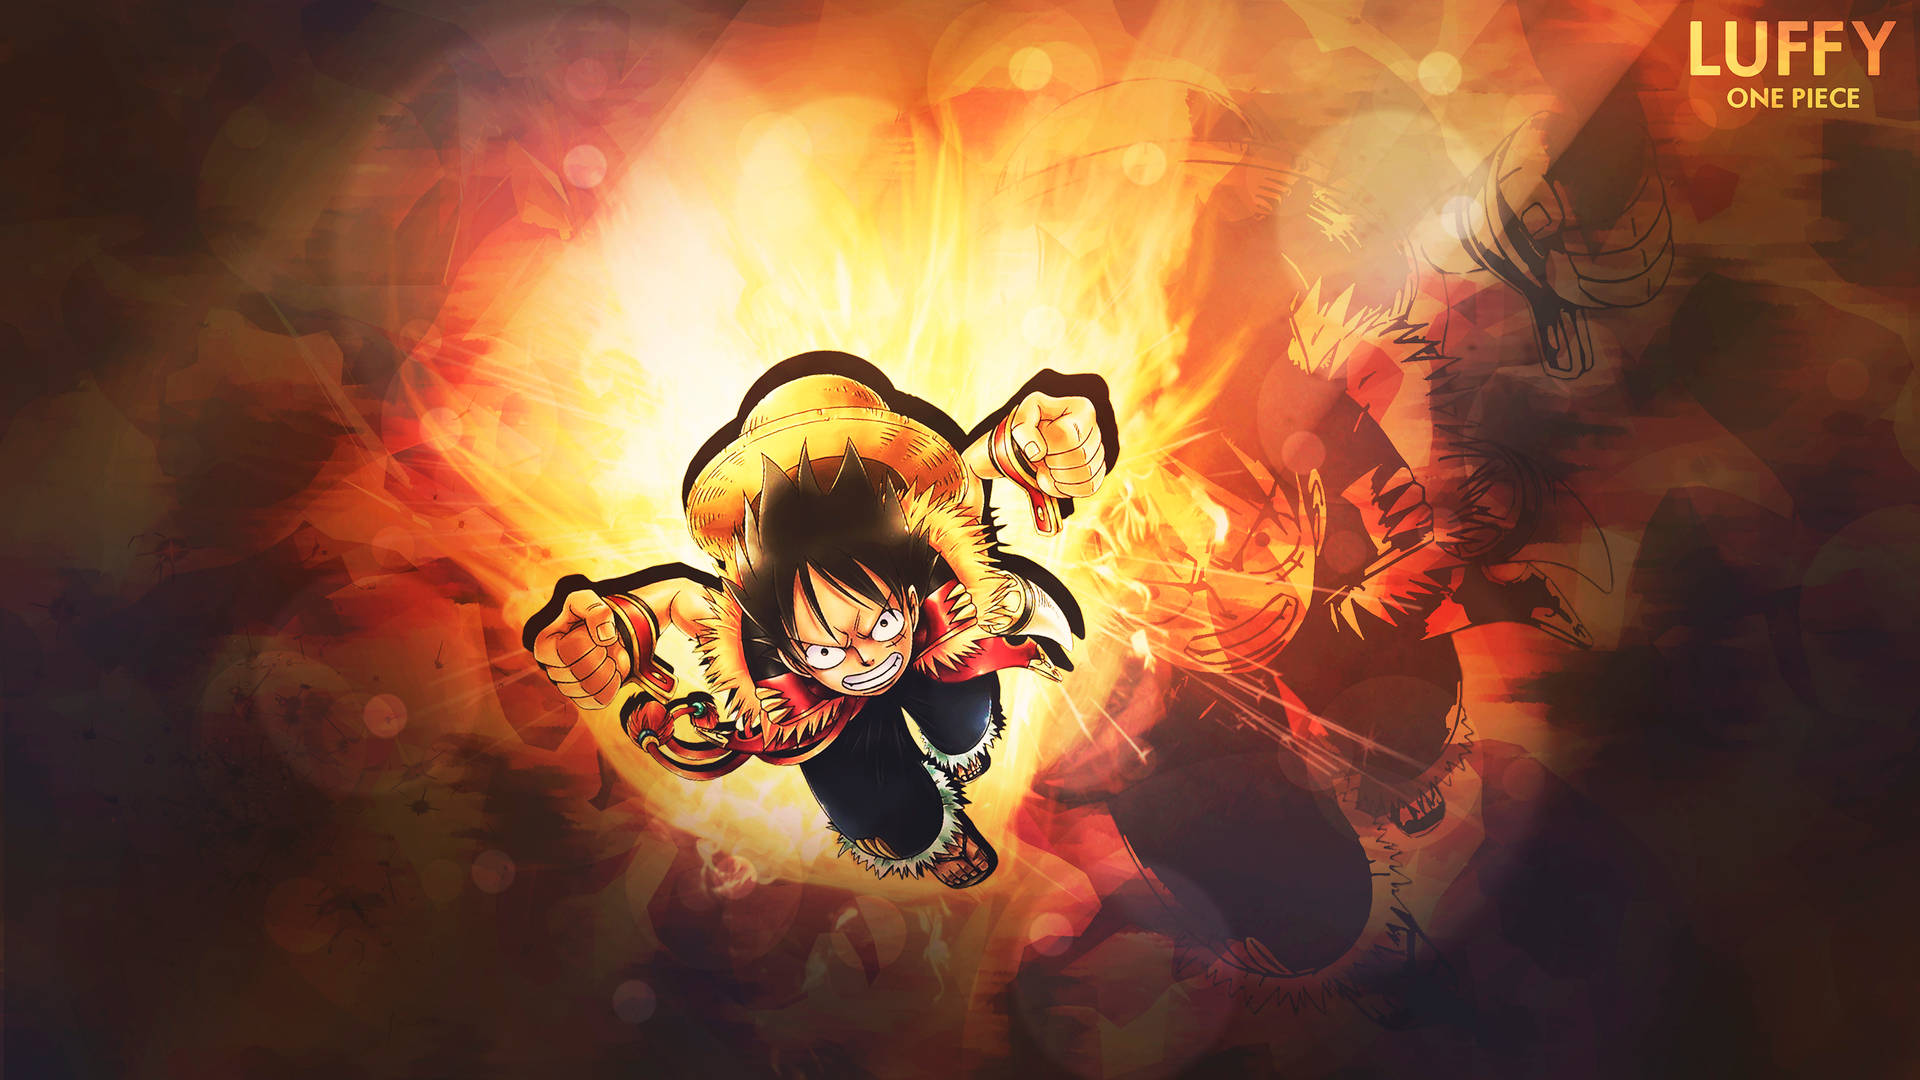 One Piece Luffy Fire Art Wallpaper